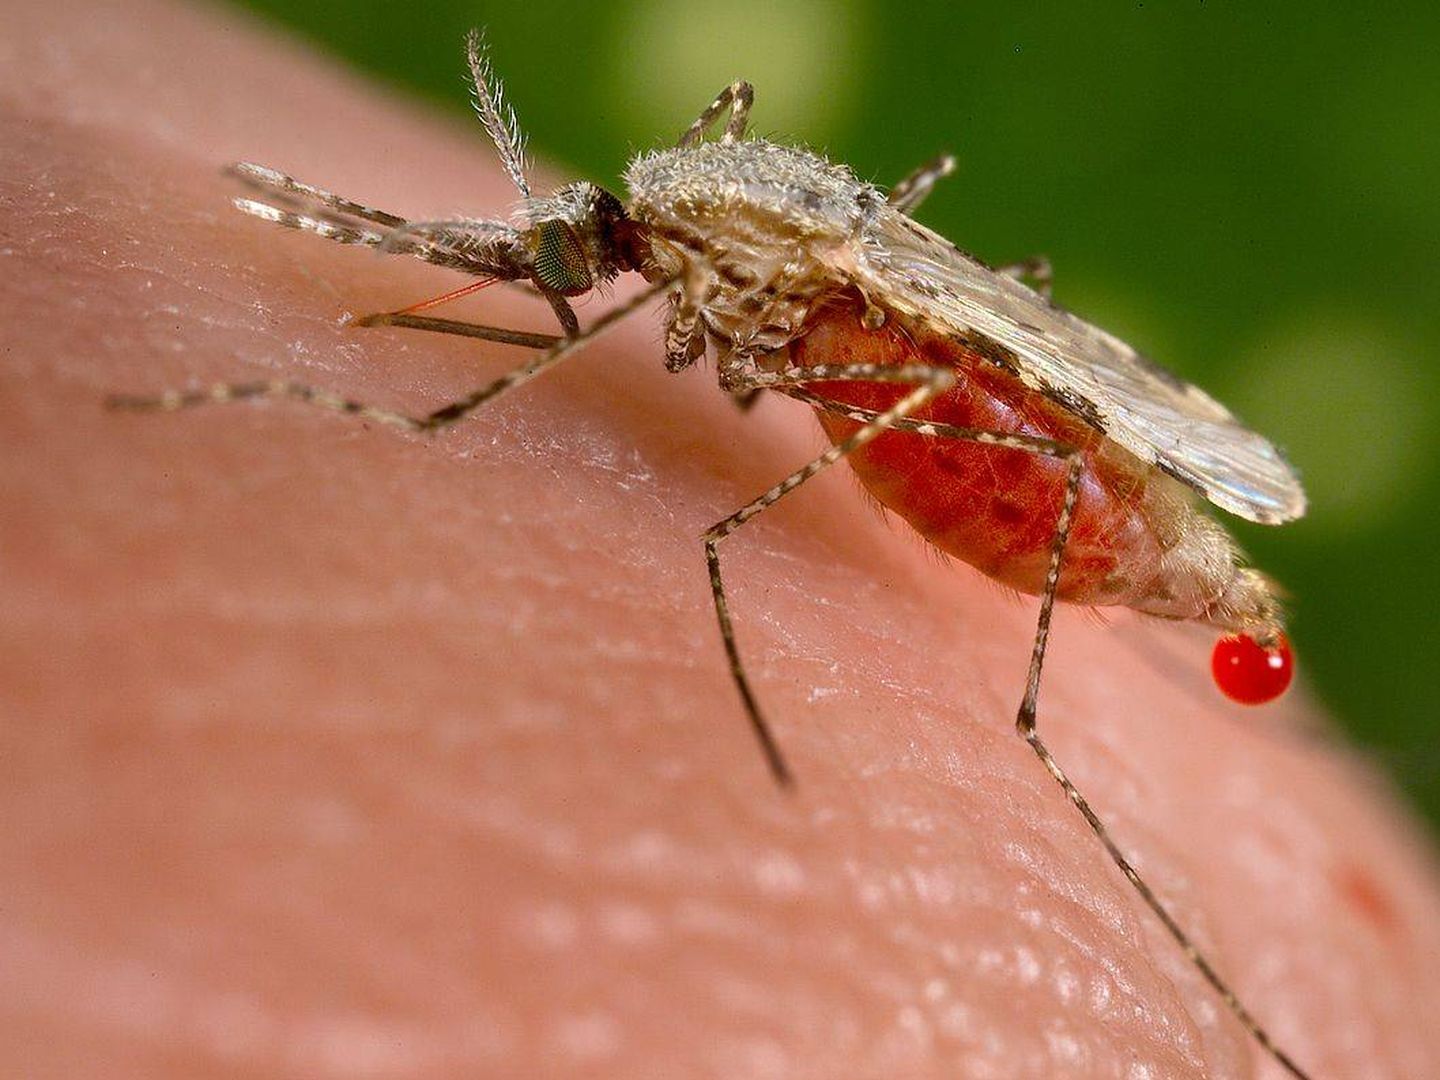 El mosquito 'Anopheles' es el culpable de la transmisión de la malaria. (Imagen: Wikipedia)